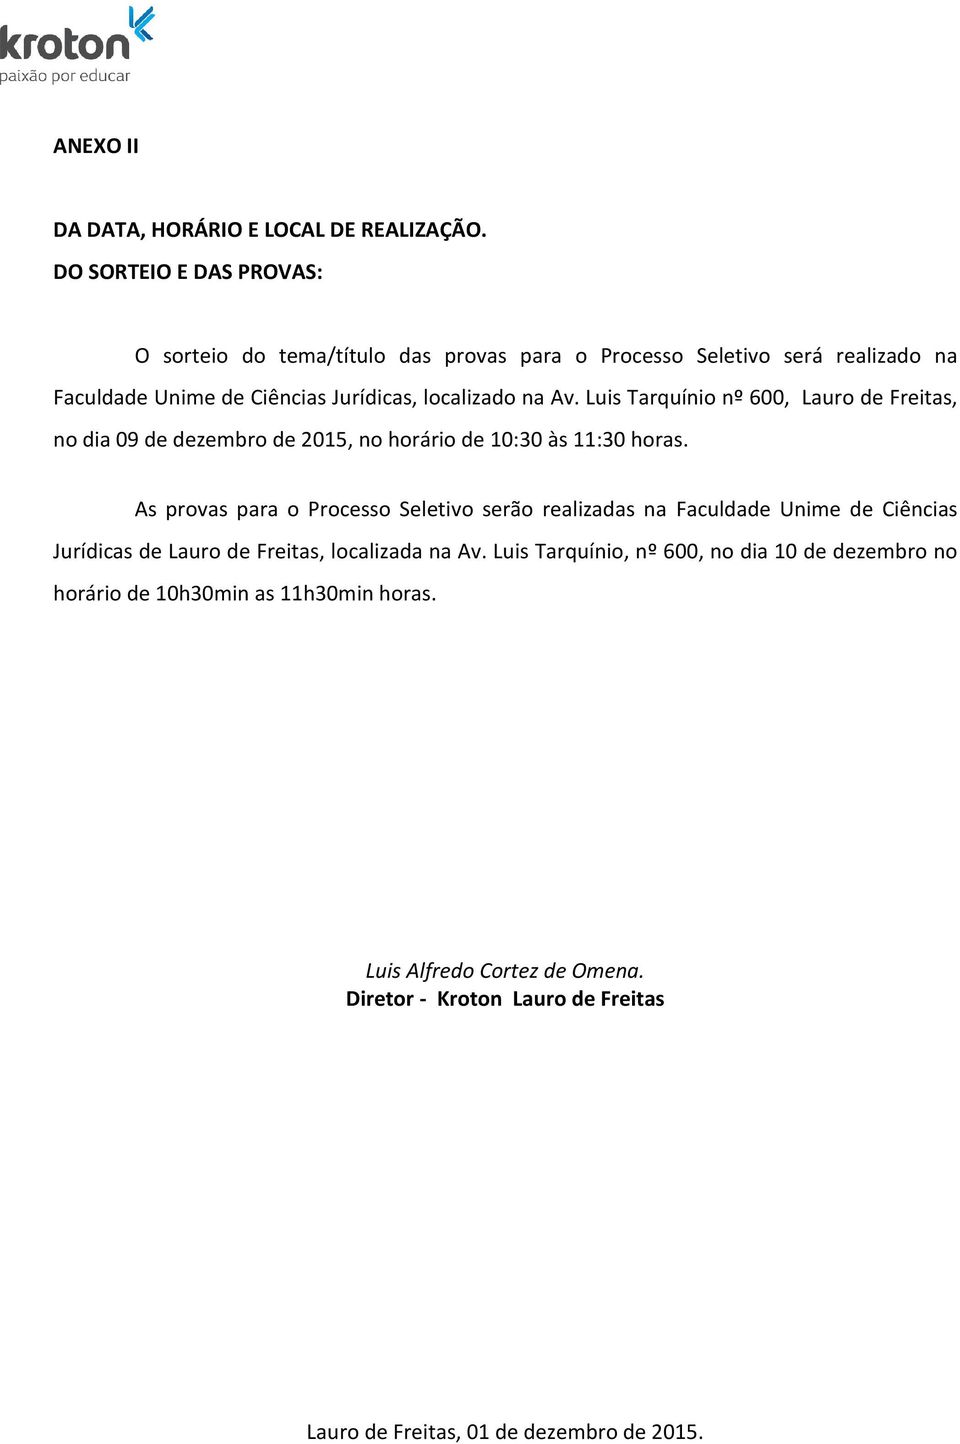 Luis Tarquínio nº 600, Lauro de Freitas, no dia 09 de dezembro de 2015, no horário de 10:30 às 11:30 horas.